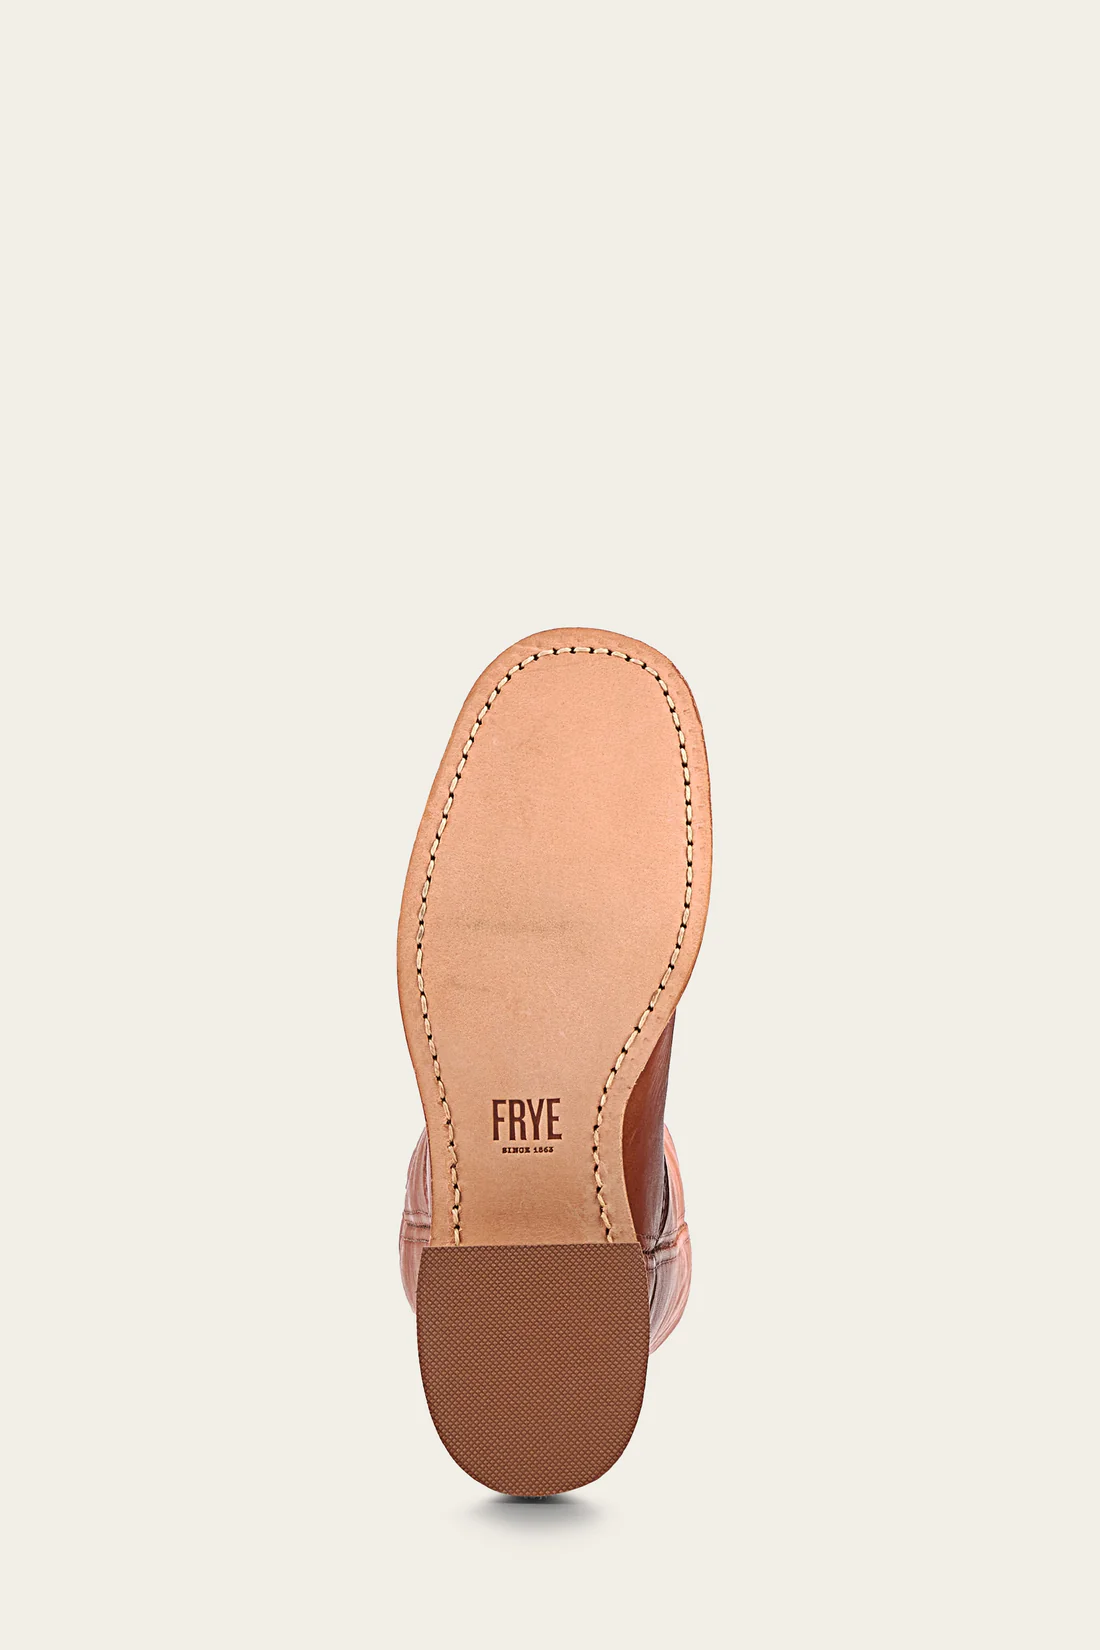 Frye Campus Leather Boot - Saddle bottom